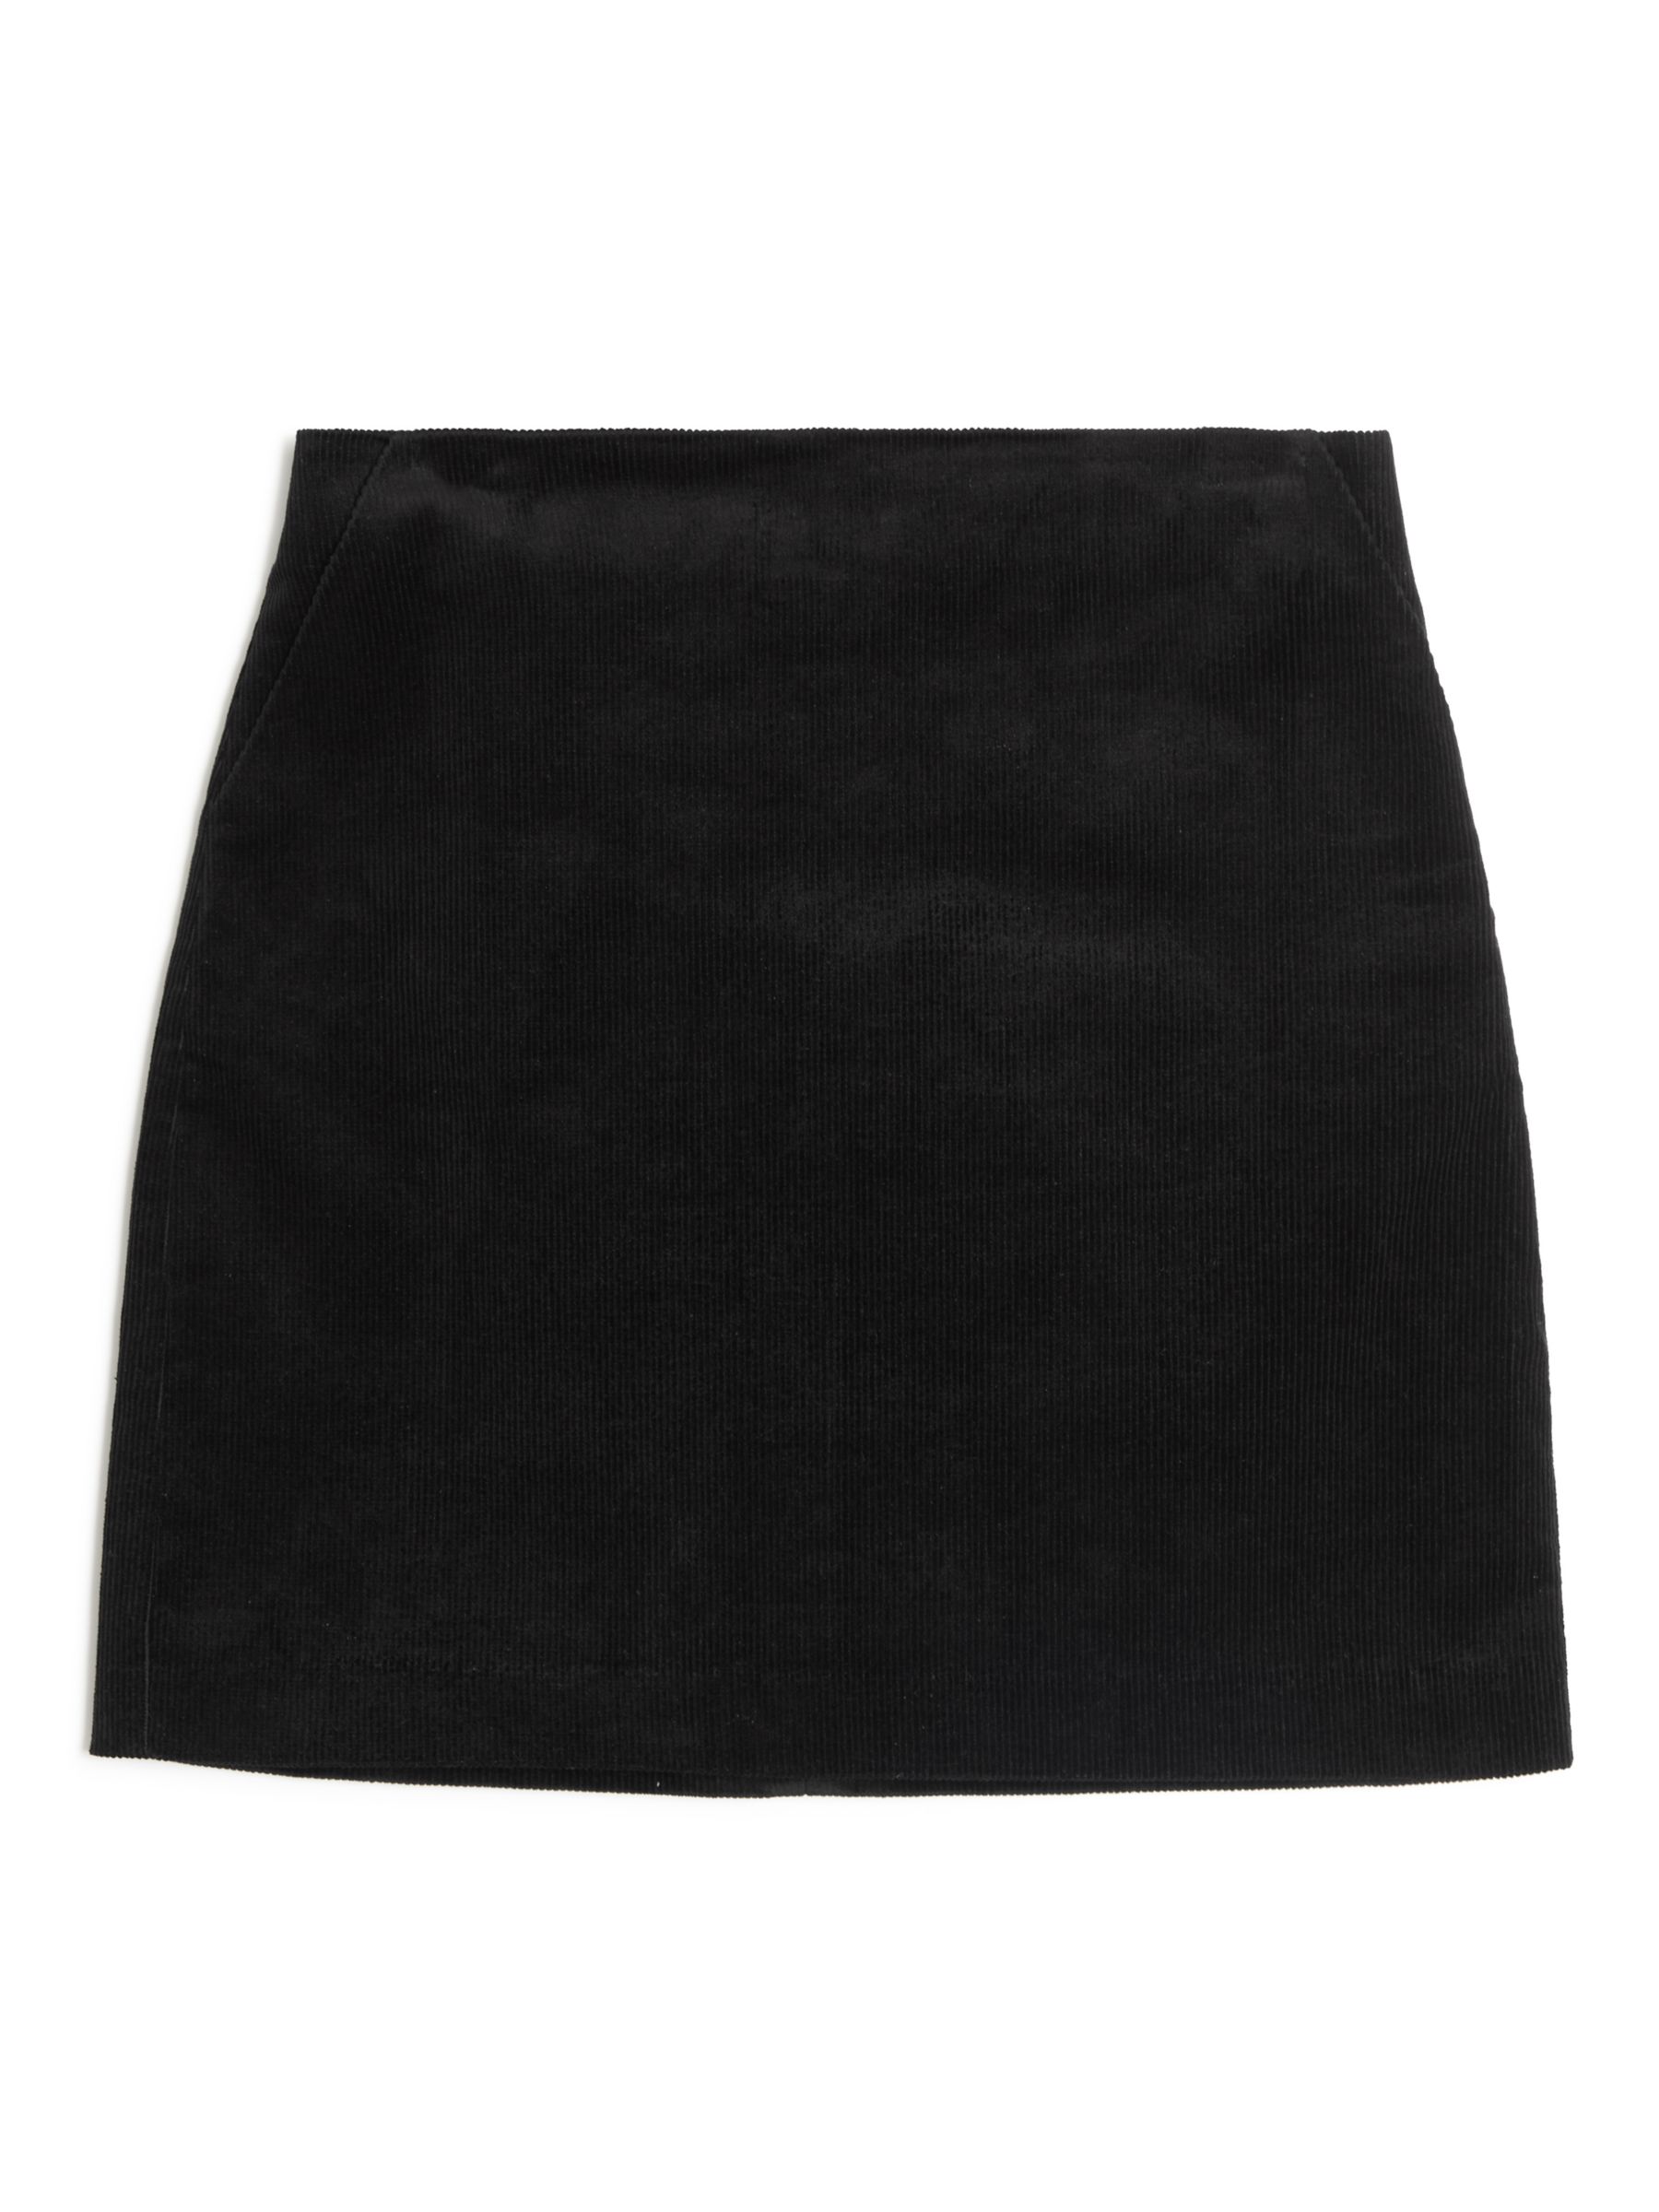 Albaray Plain Cord Mini Pelmet Skirt, Black at John Lewis & Partners